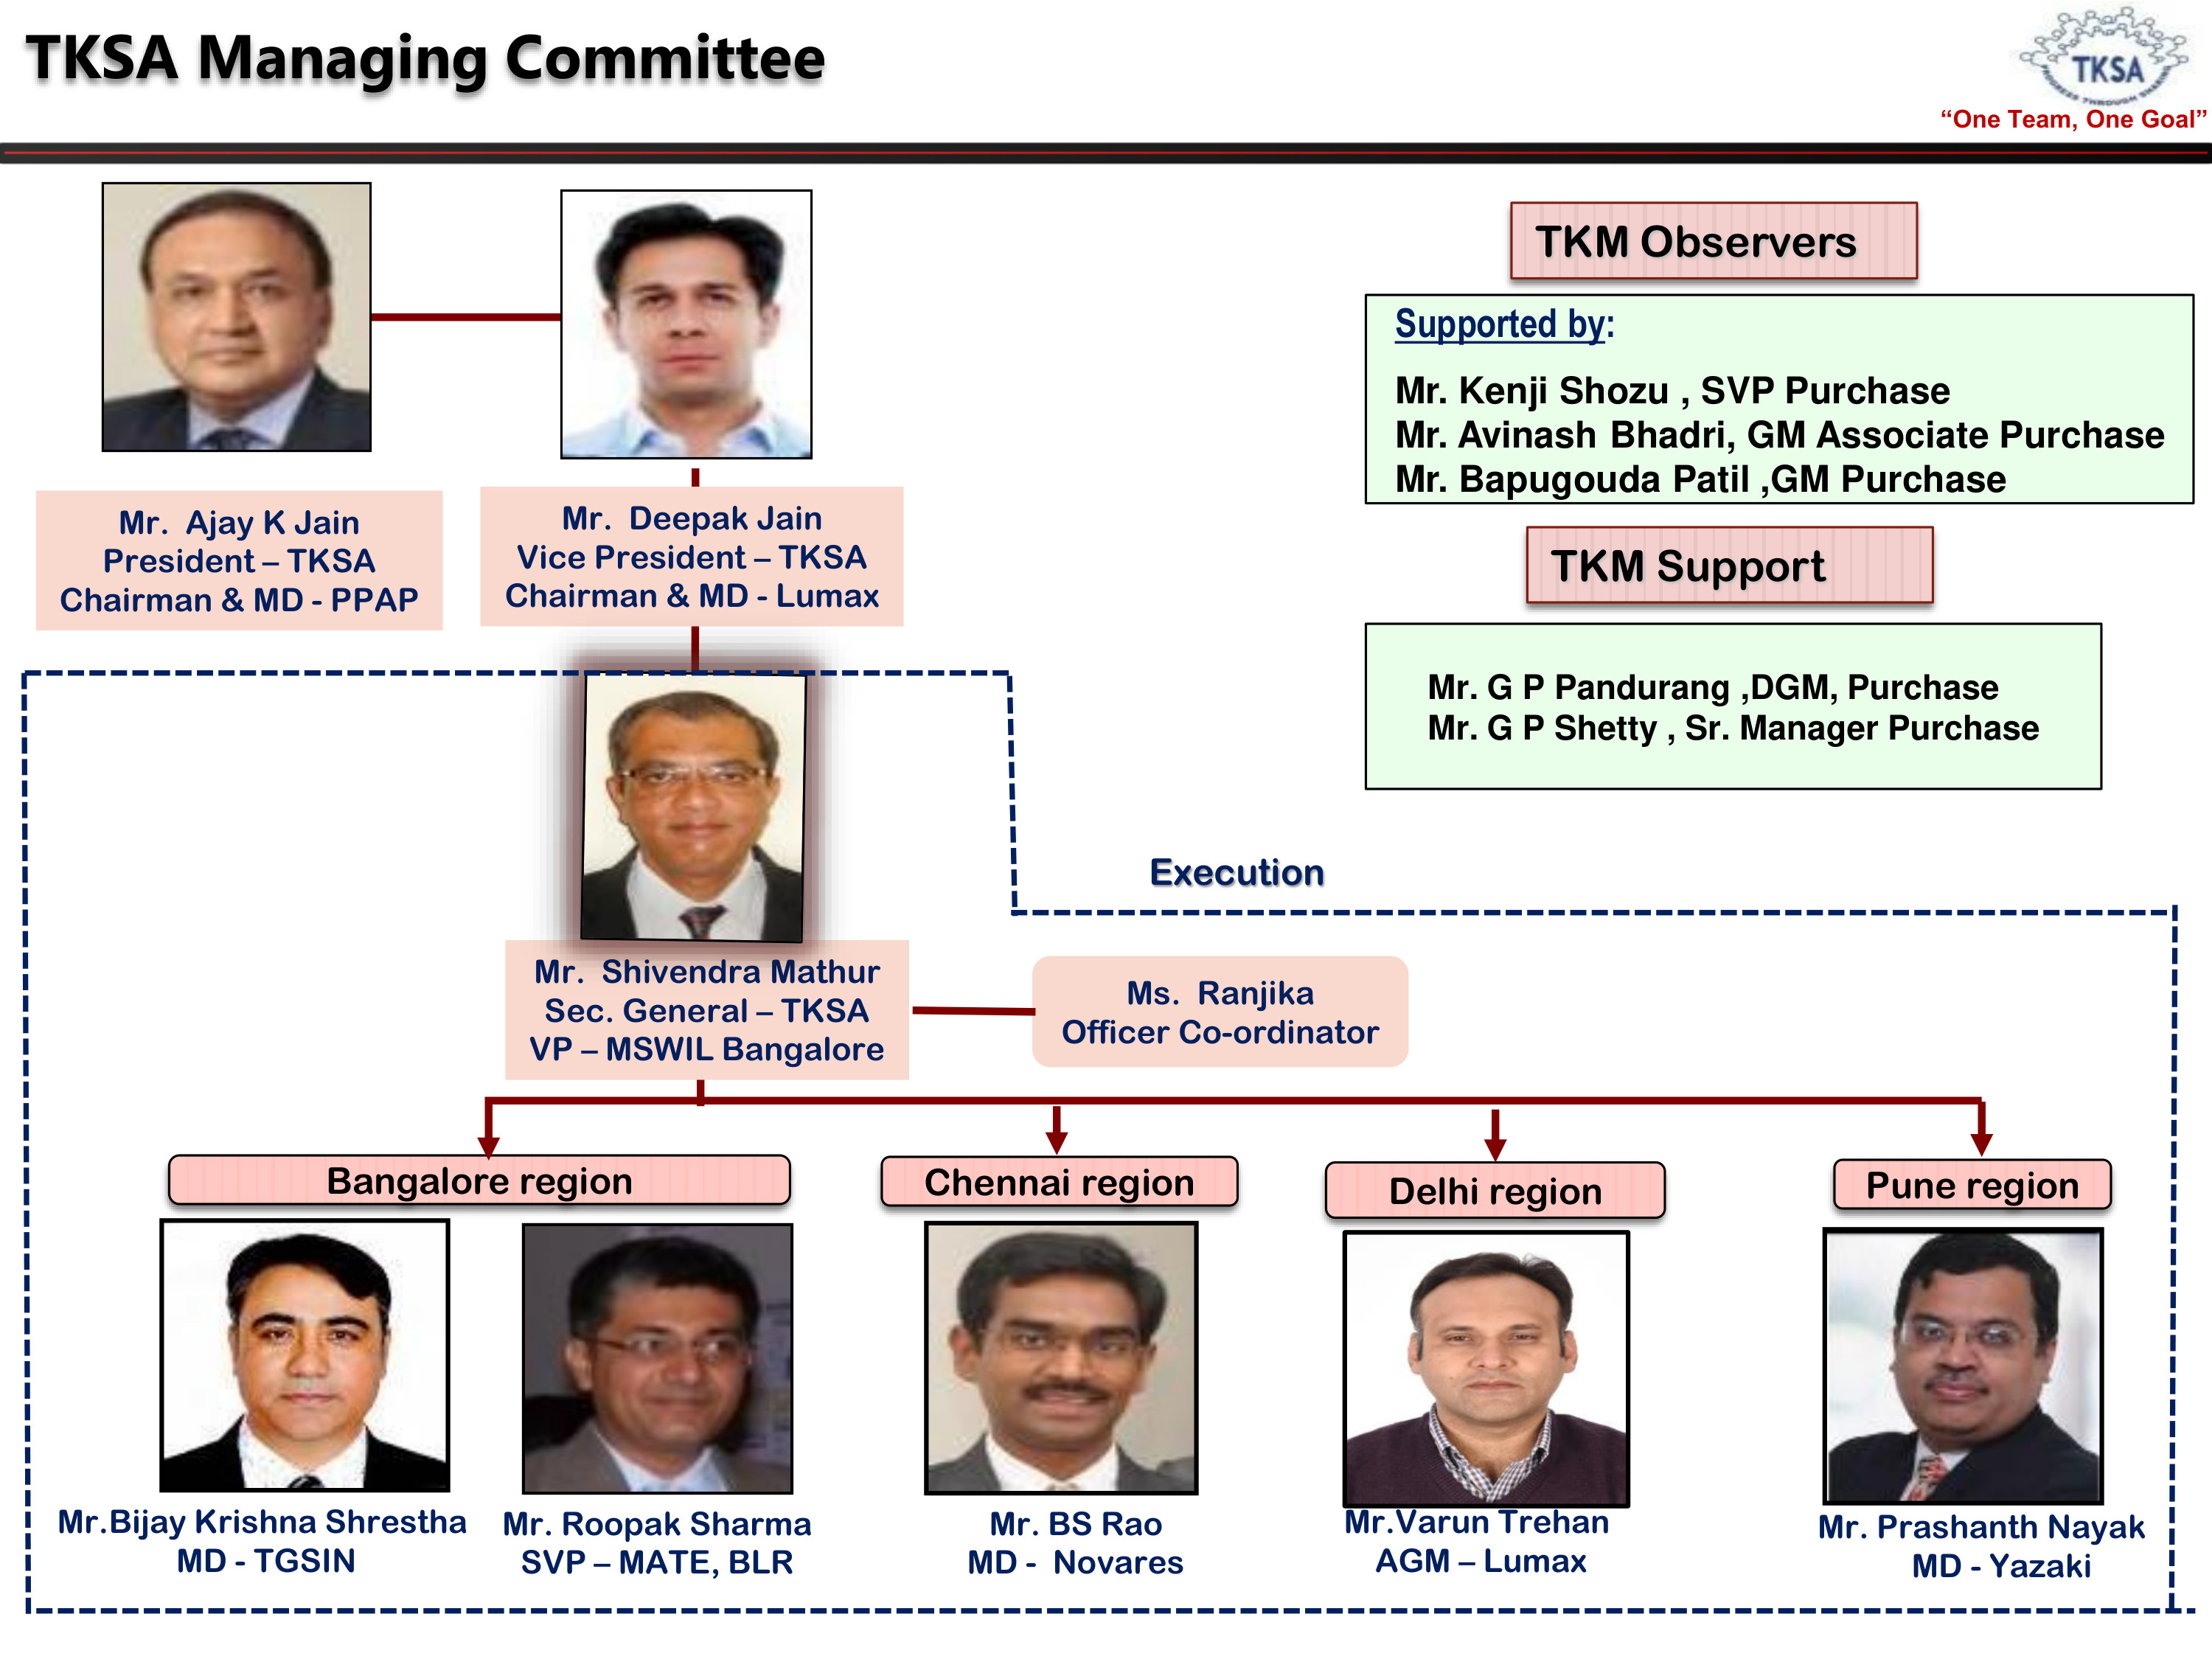 TKSA Managing Committee 2022